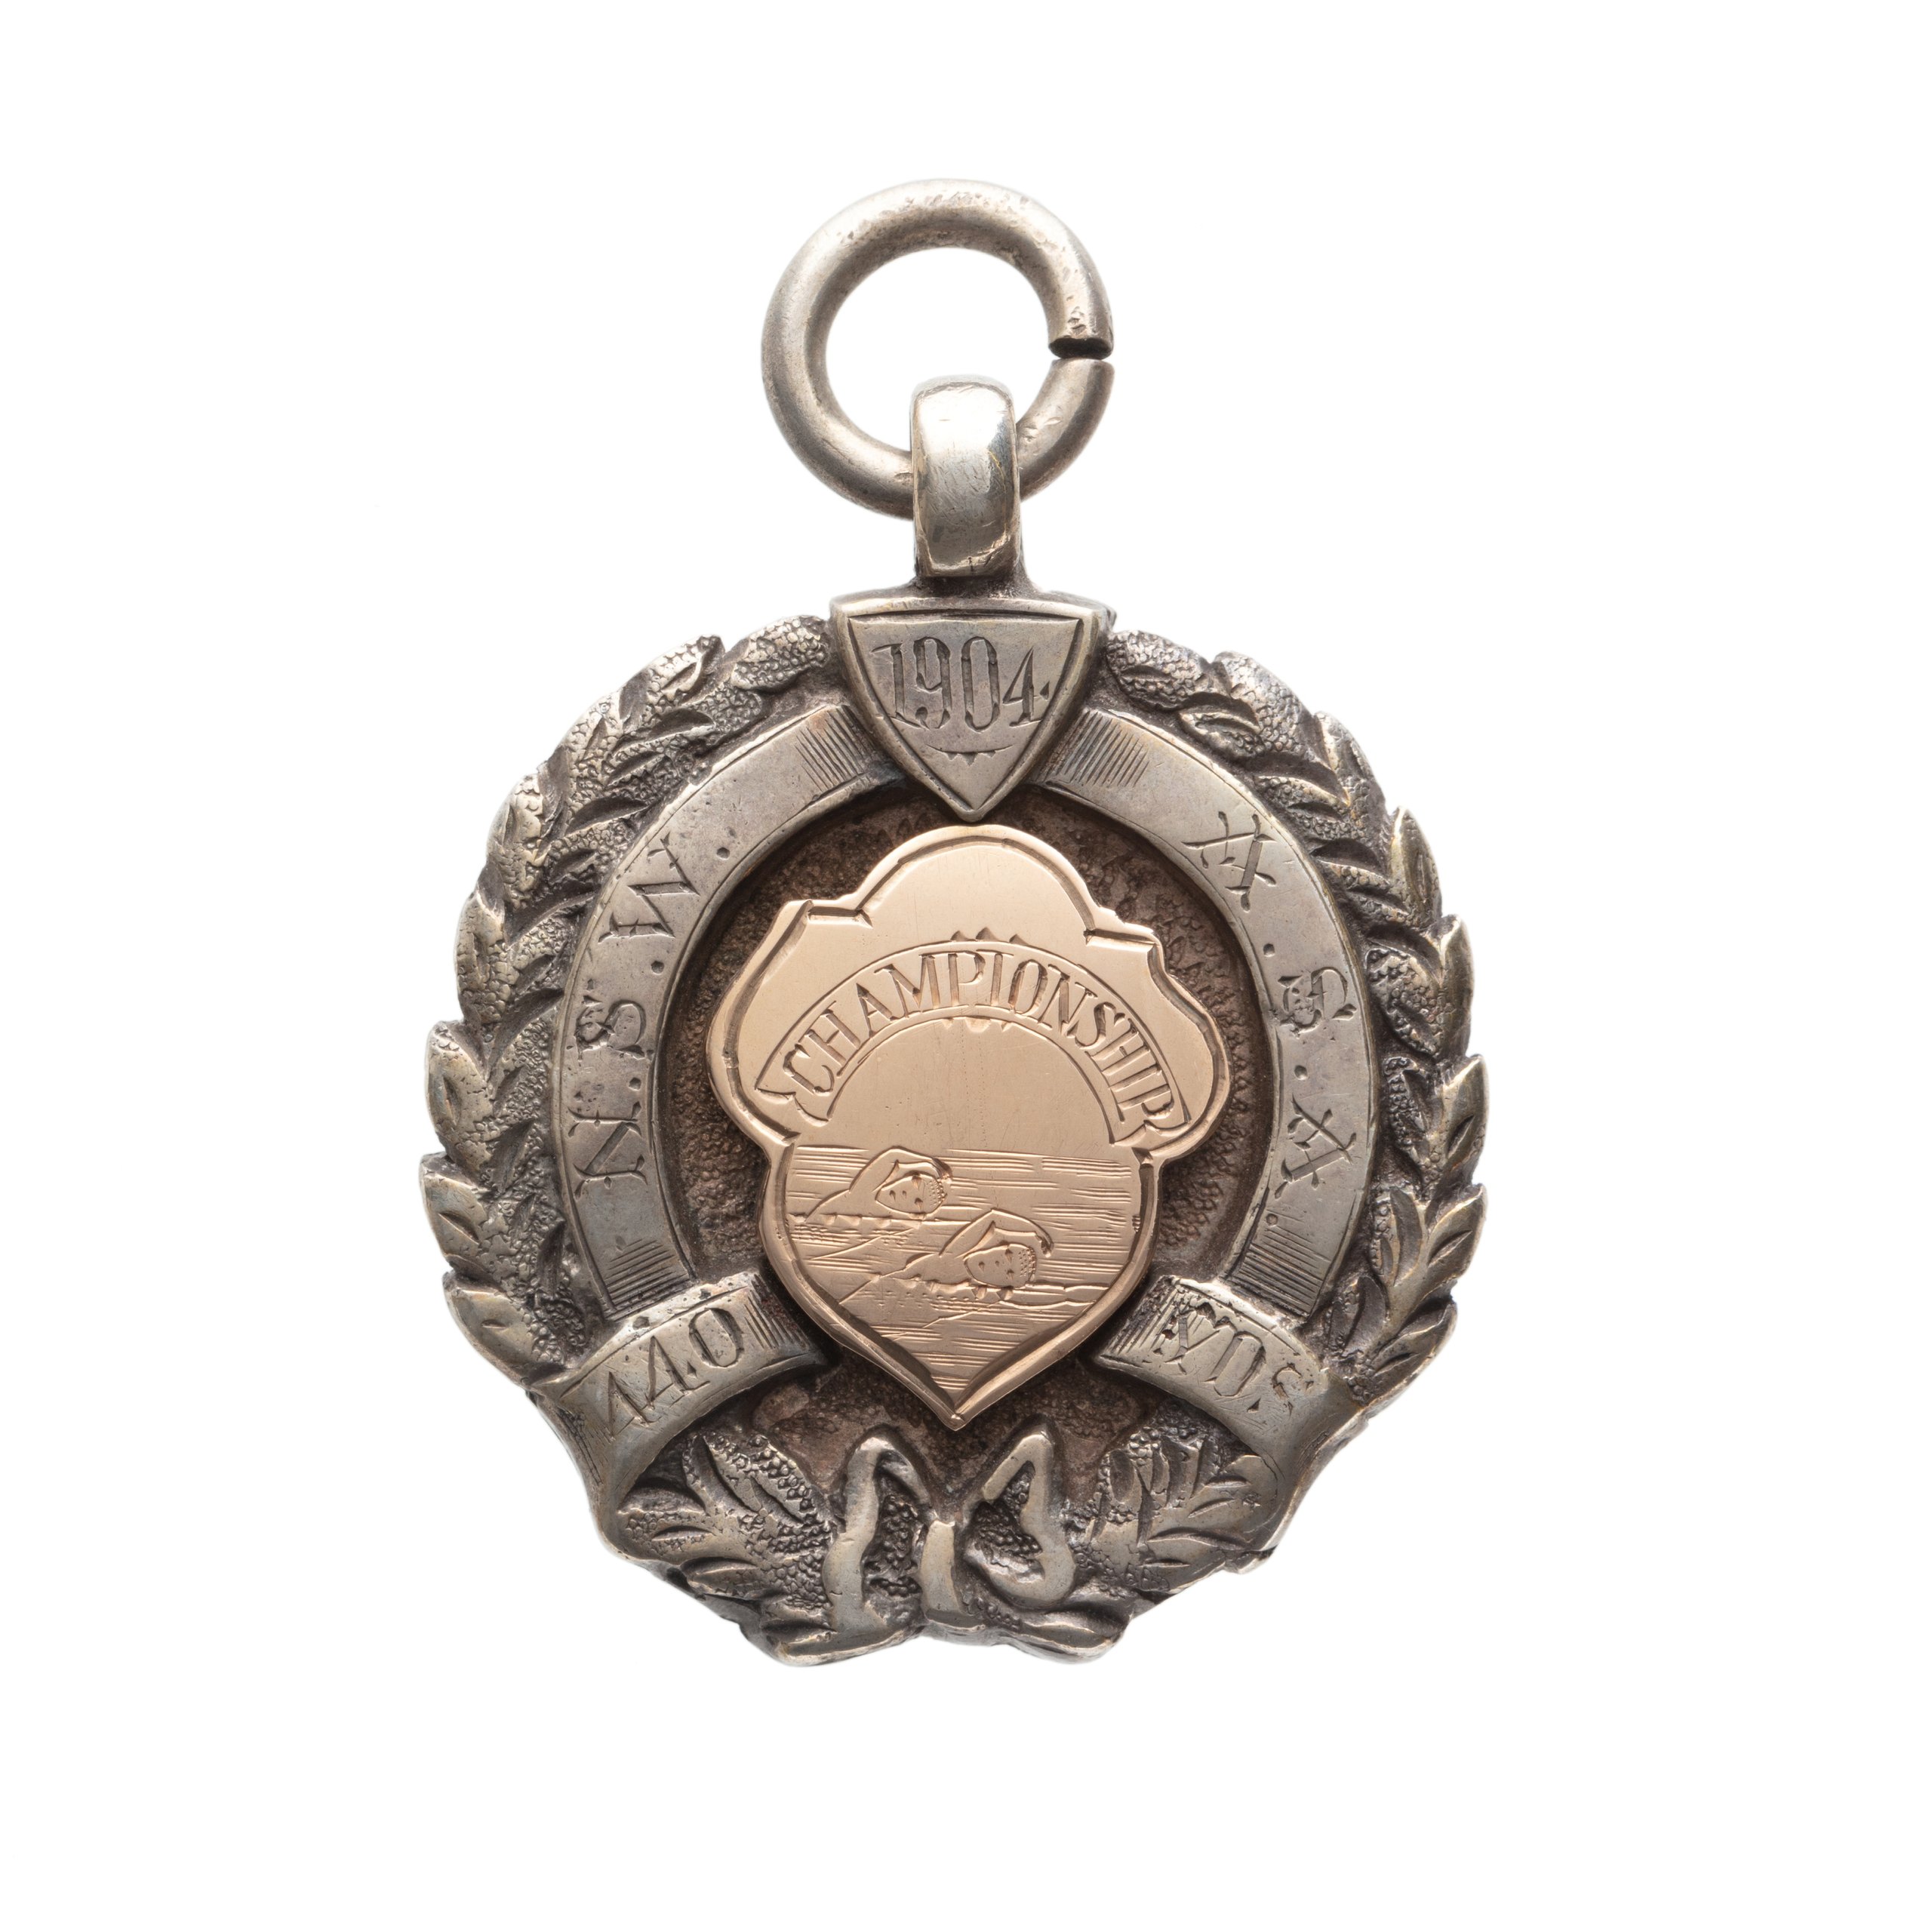 Medal won by Bernard Bede Kieran in the 1904 NSW ASA 440 yards race